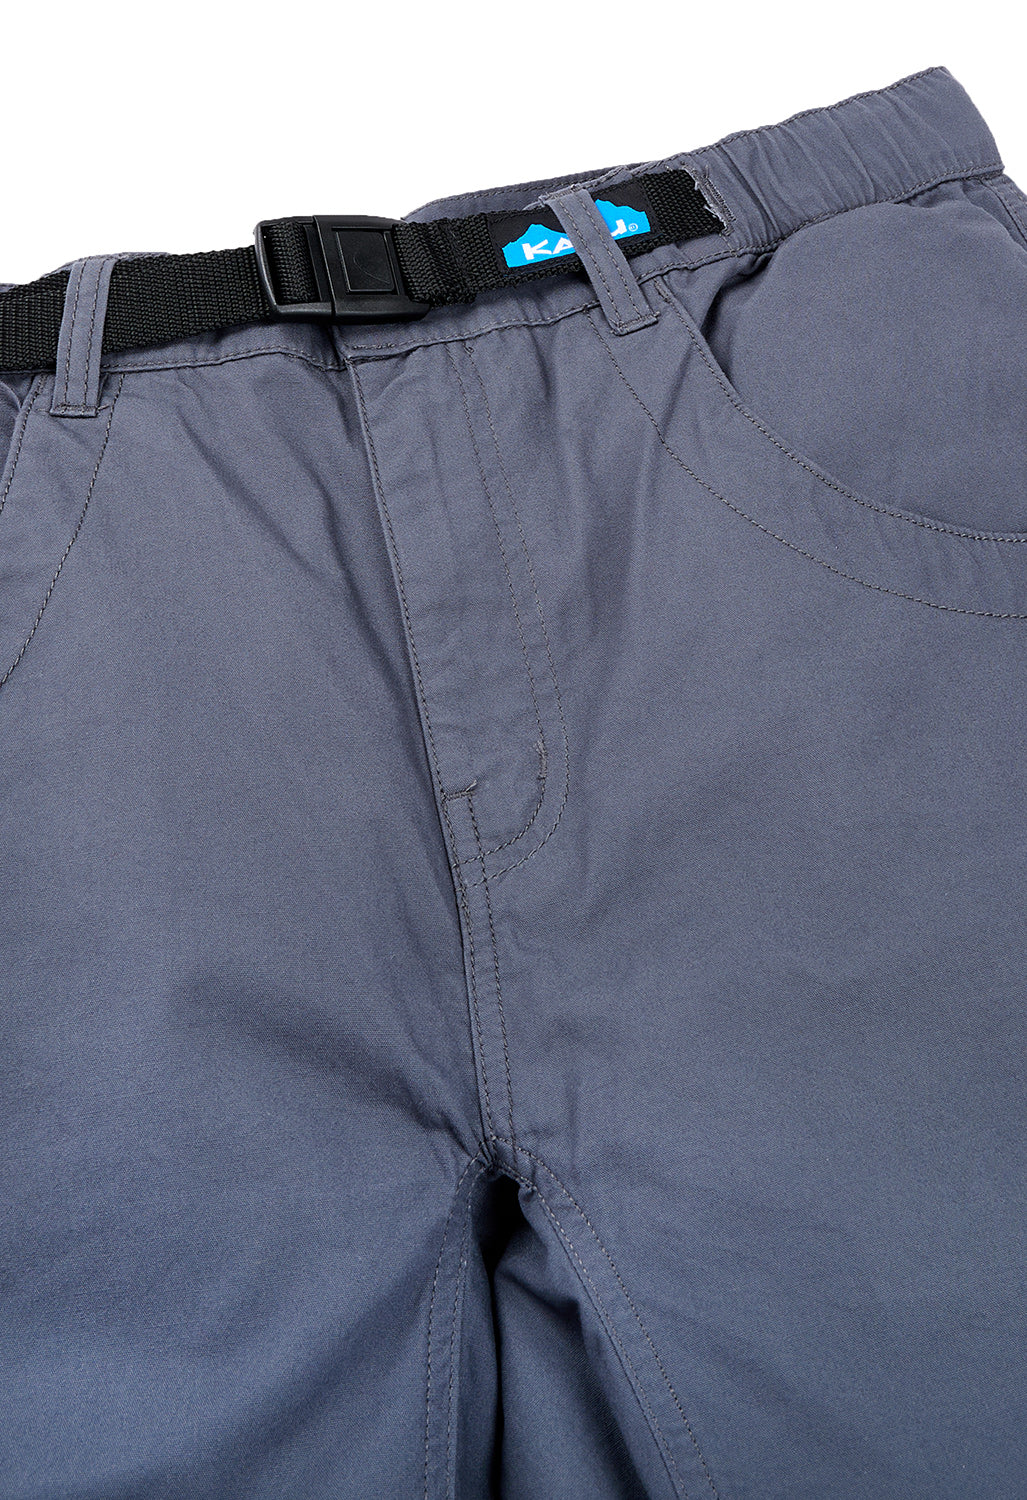 KAVU Men's Chilli Lite Shorts - Granite